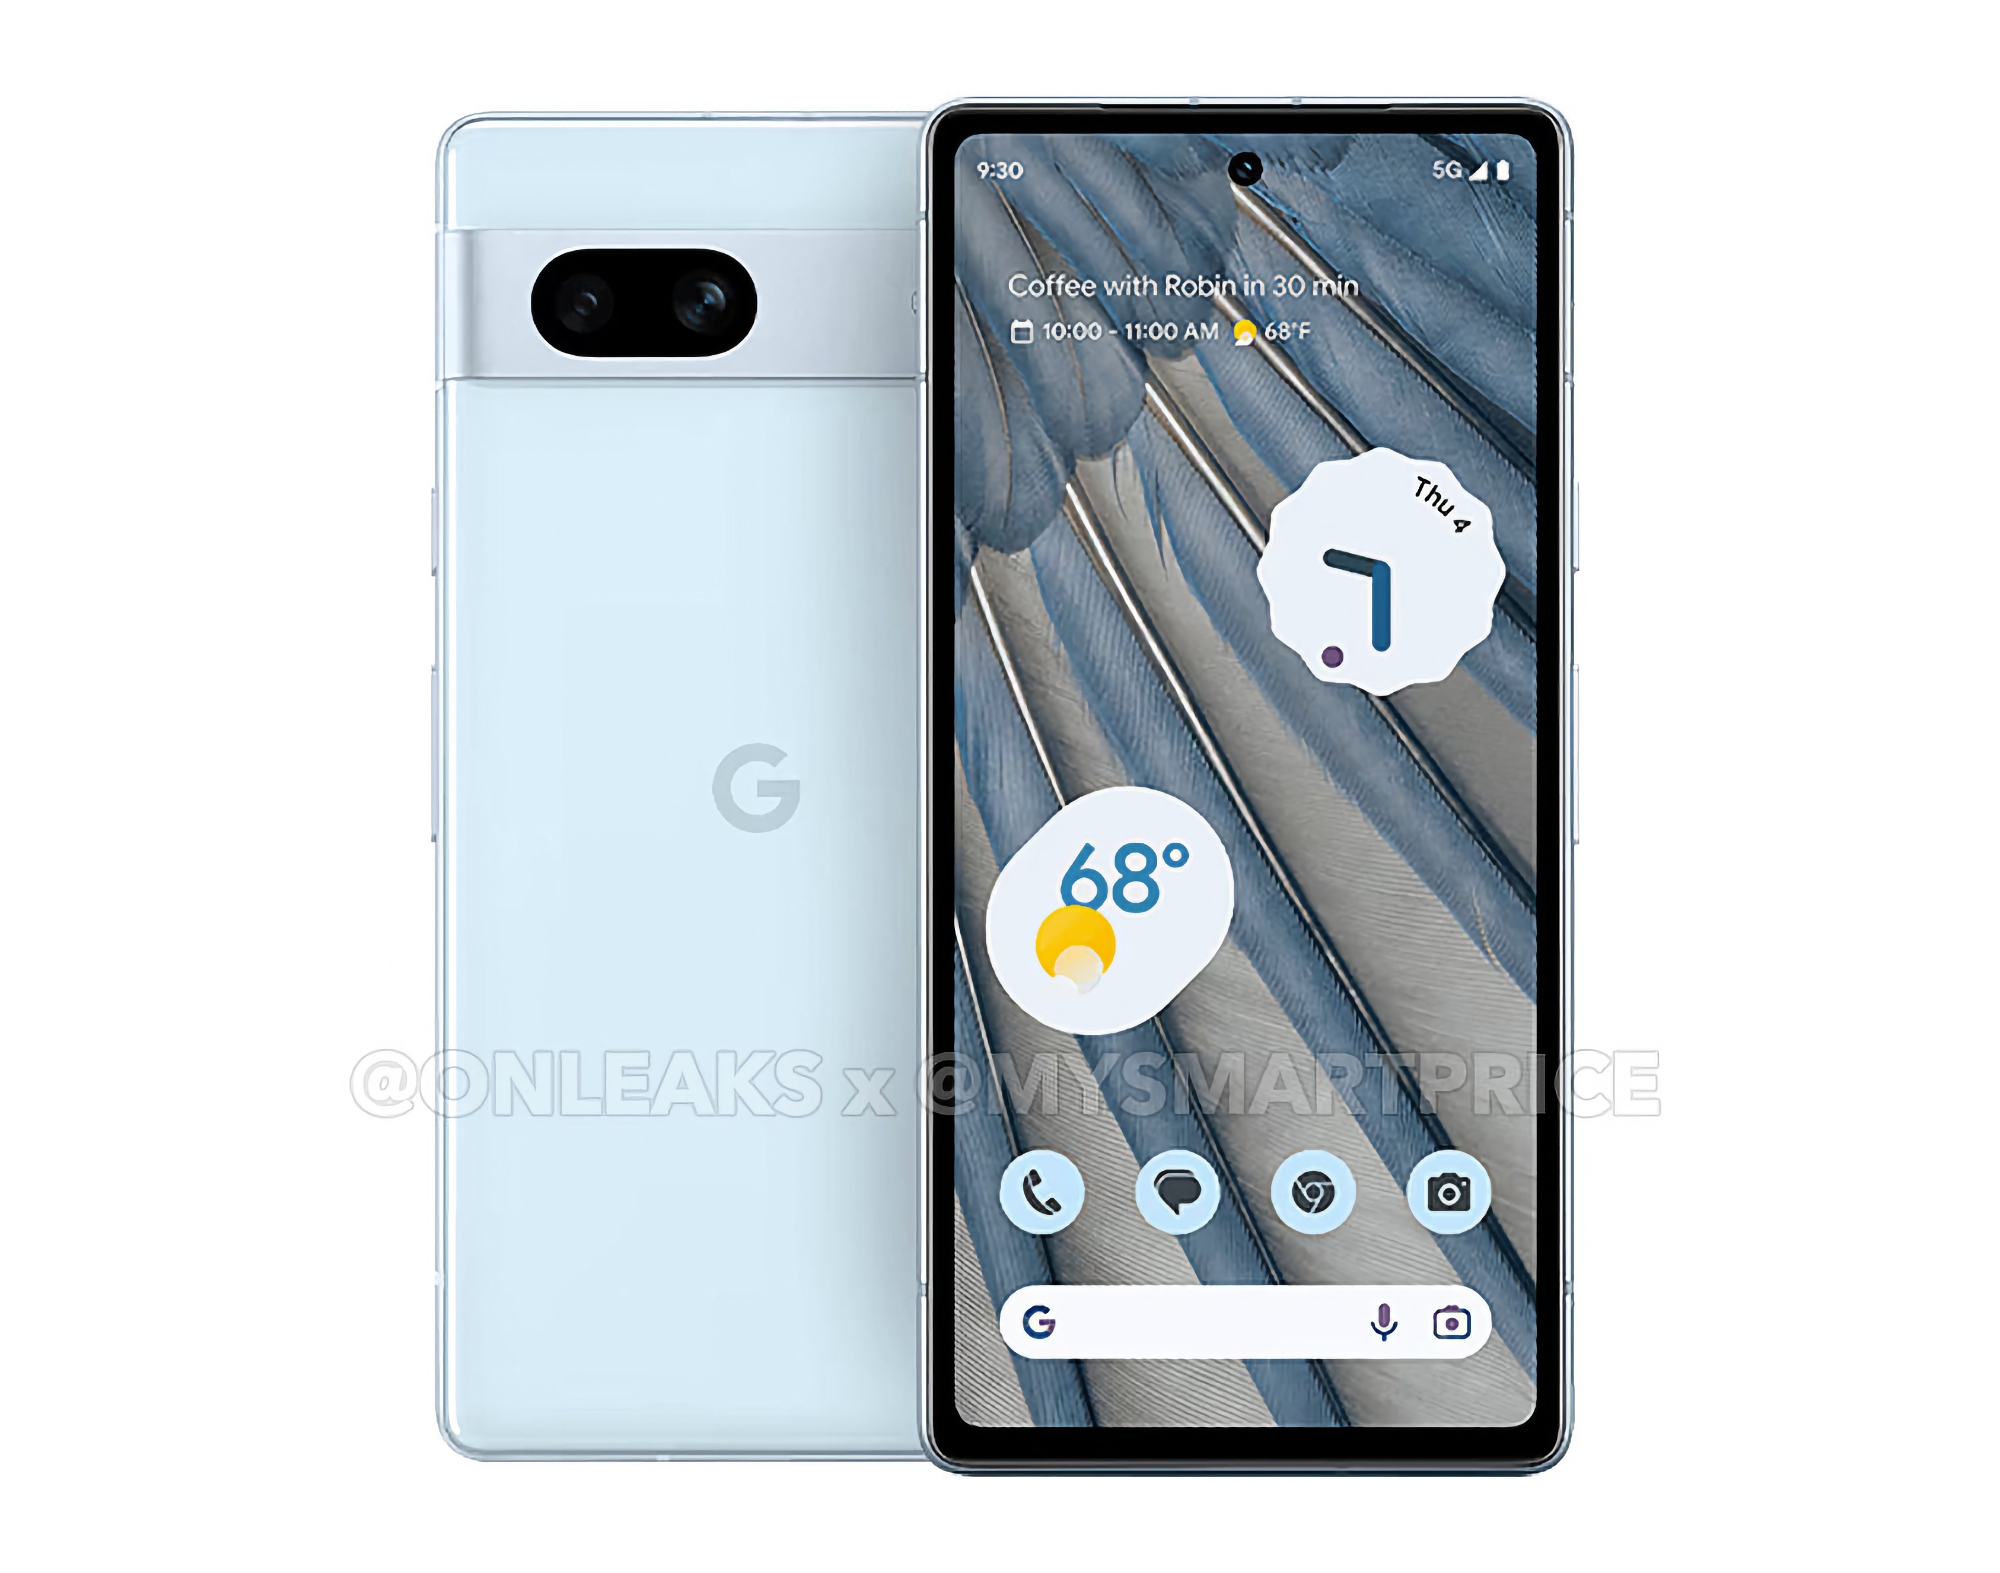 Google presentará el Pixel 7a a principios de mayo, el smartphone costará 50 dólares más que el Pixel 6a